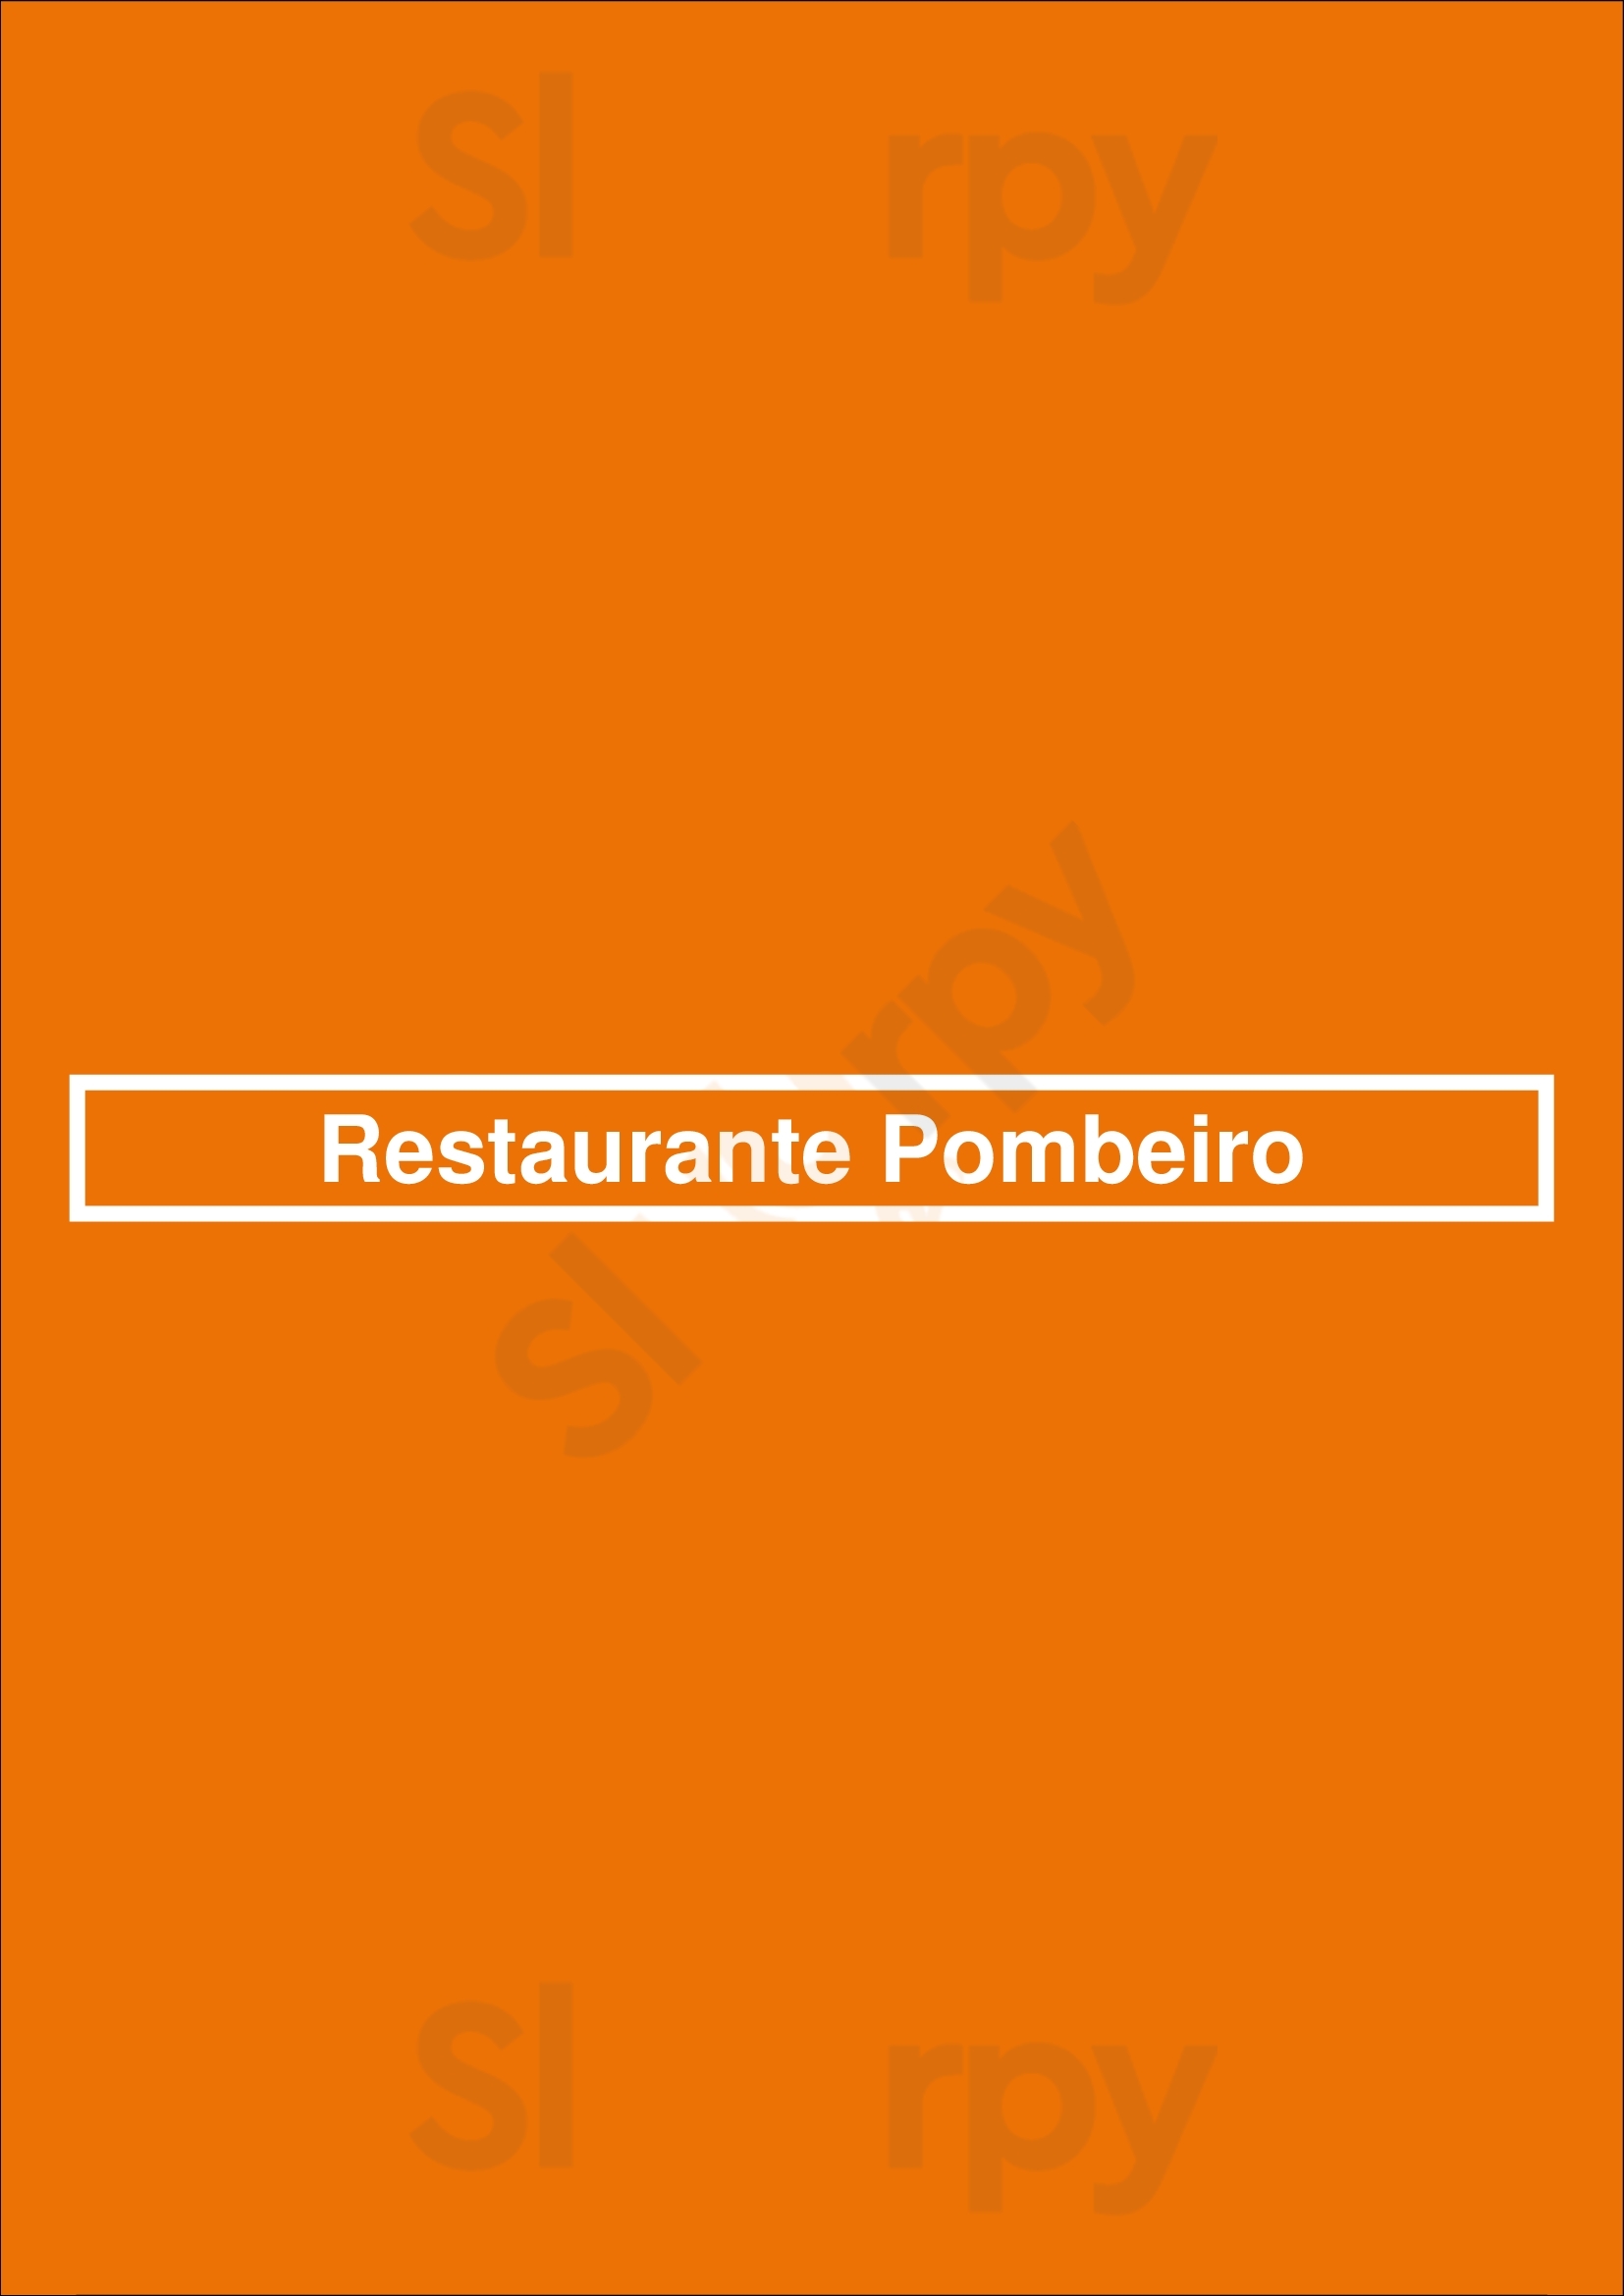 Restaurante Pombeiro Porto Menu - 1